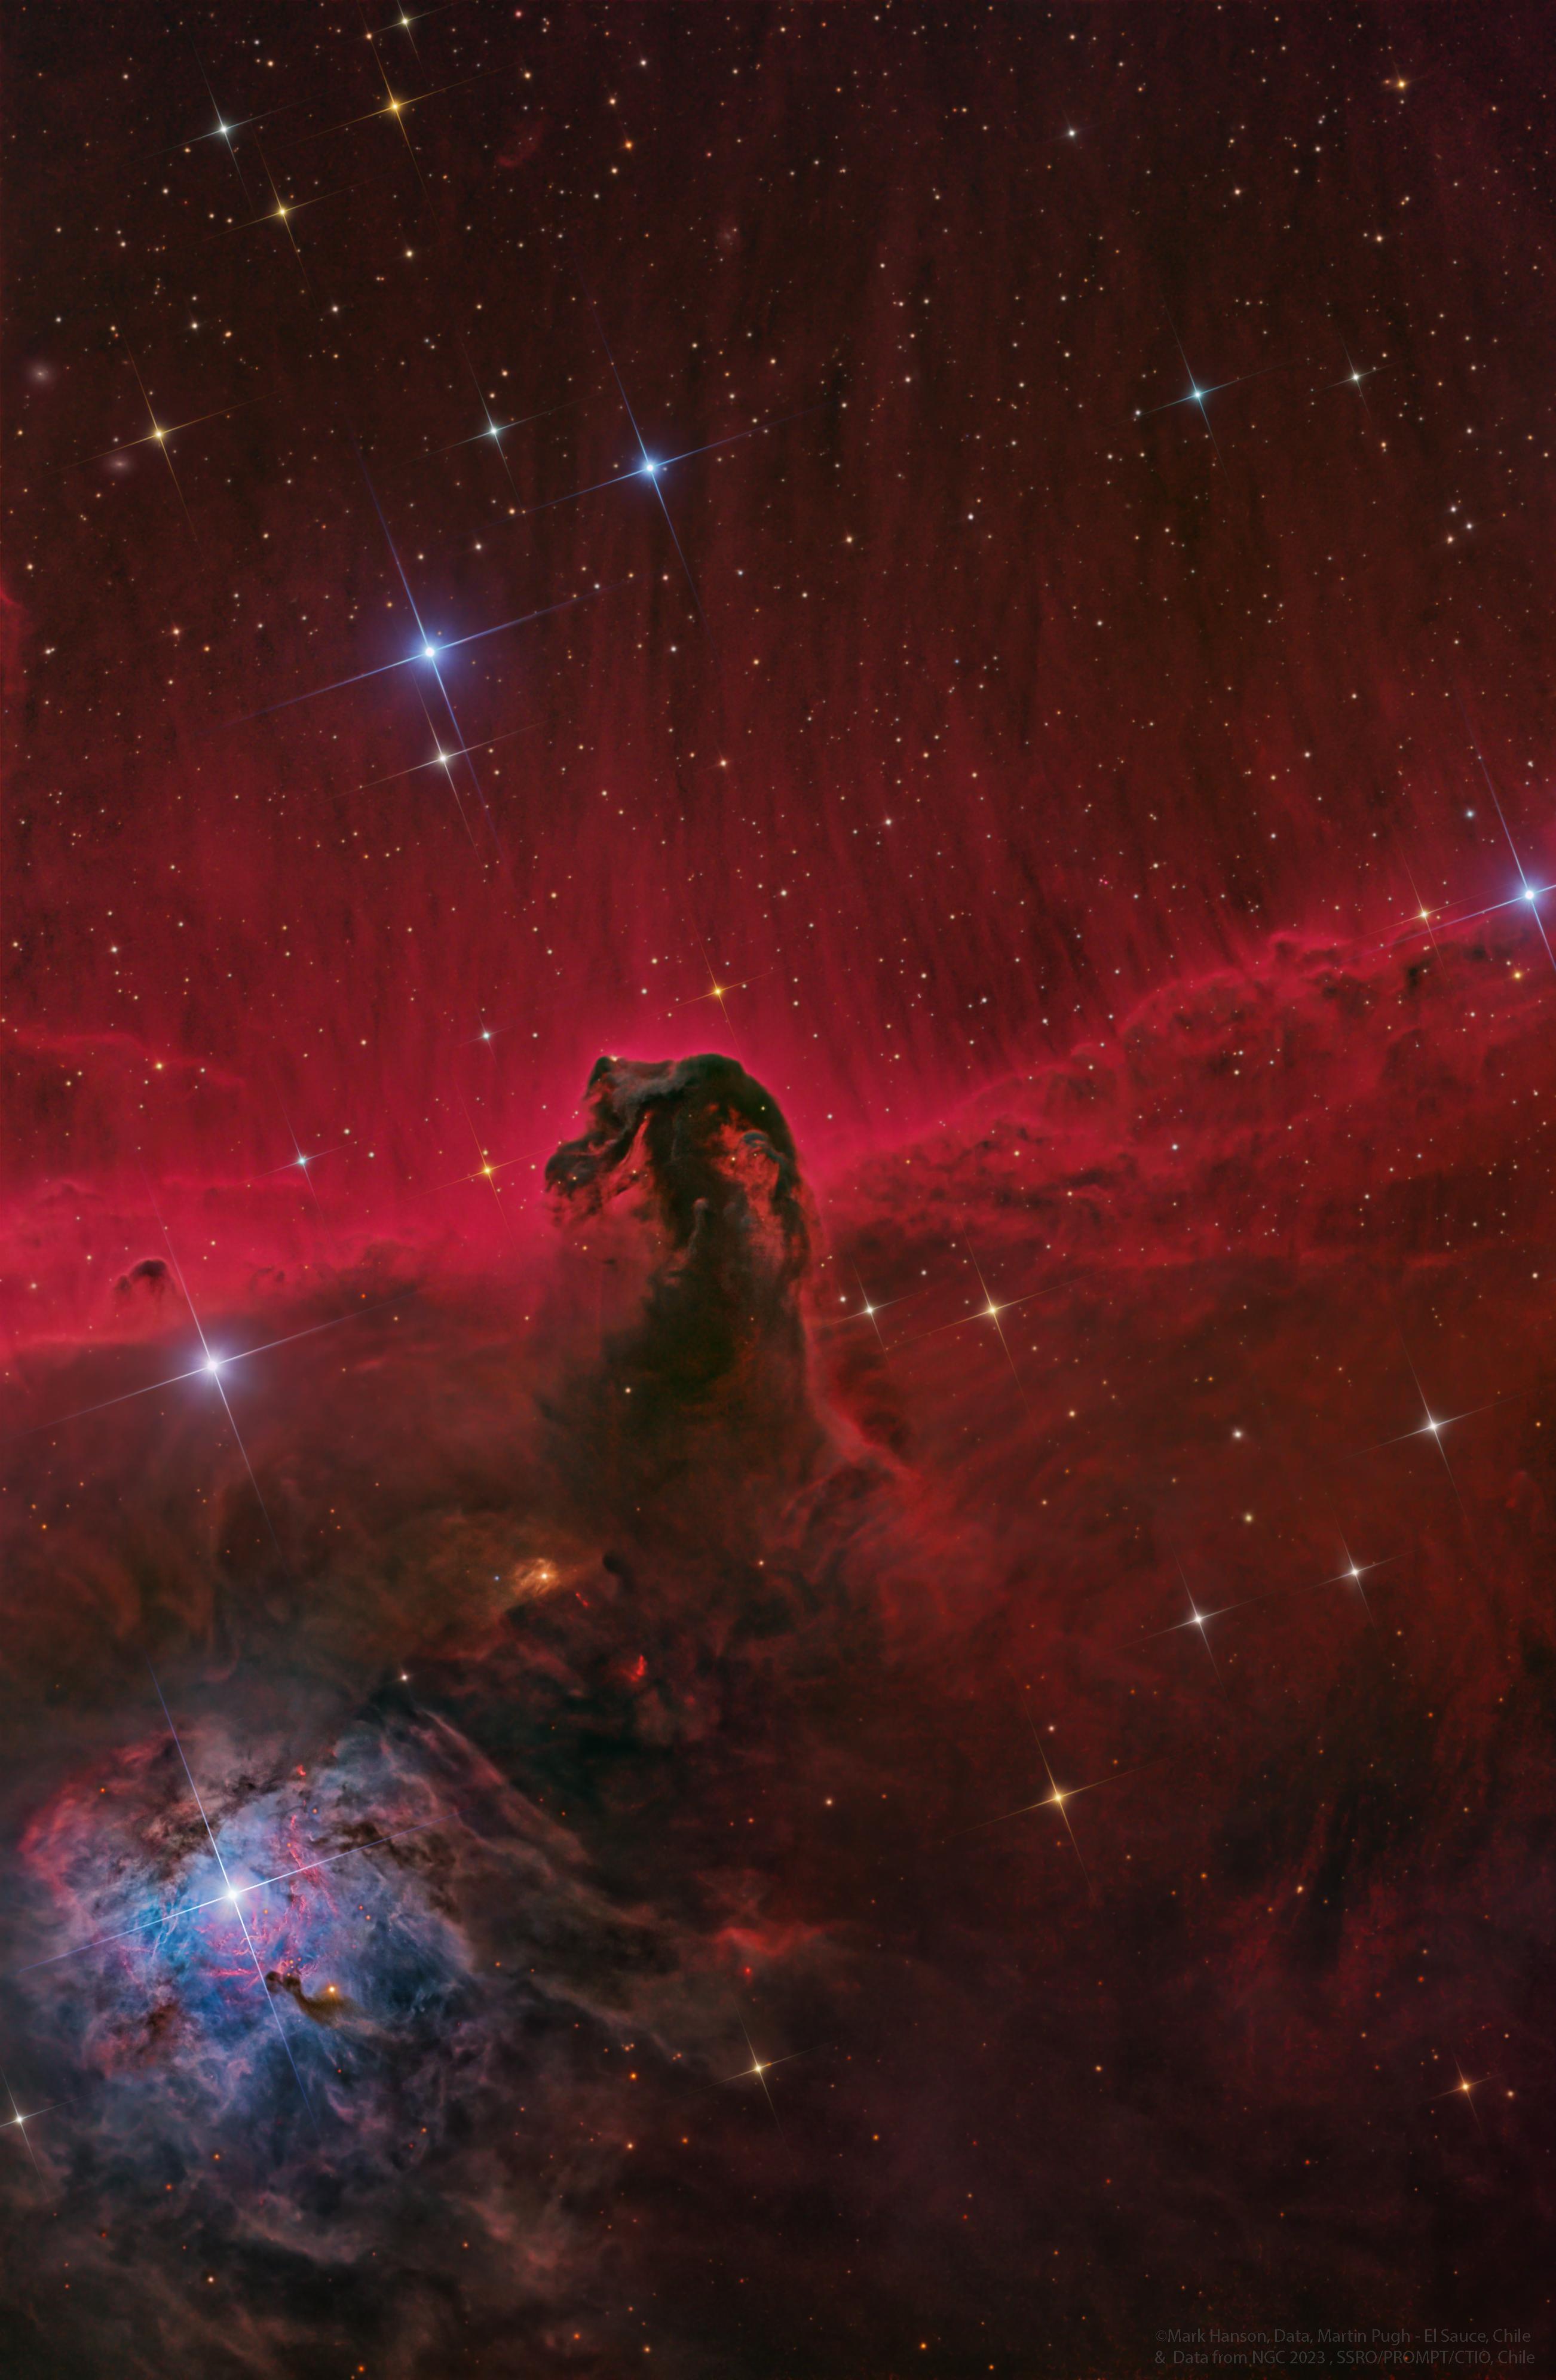 سديم داكن يشبه رأس حصانٍ قبالة خلفيّة متوهّجة بالأحمر. تظهر النجوم عبر الصورة.